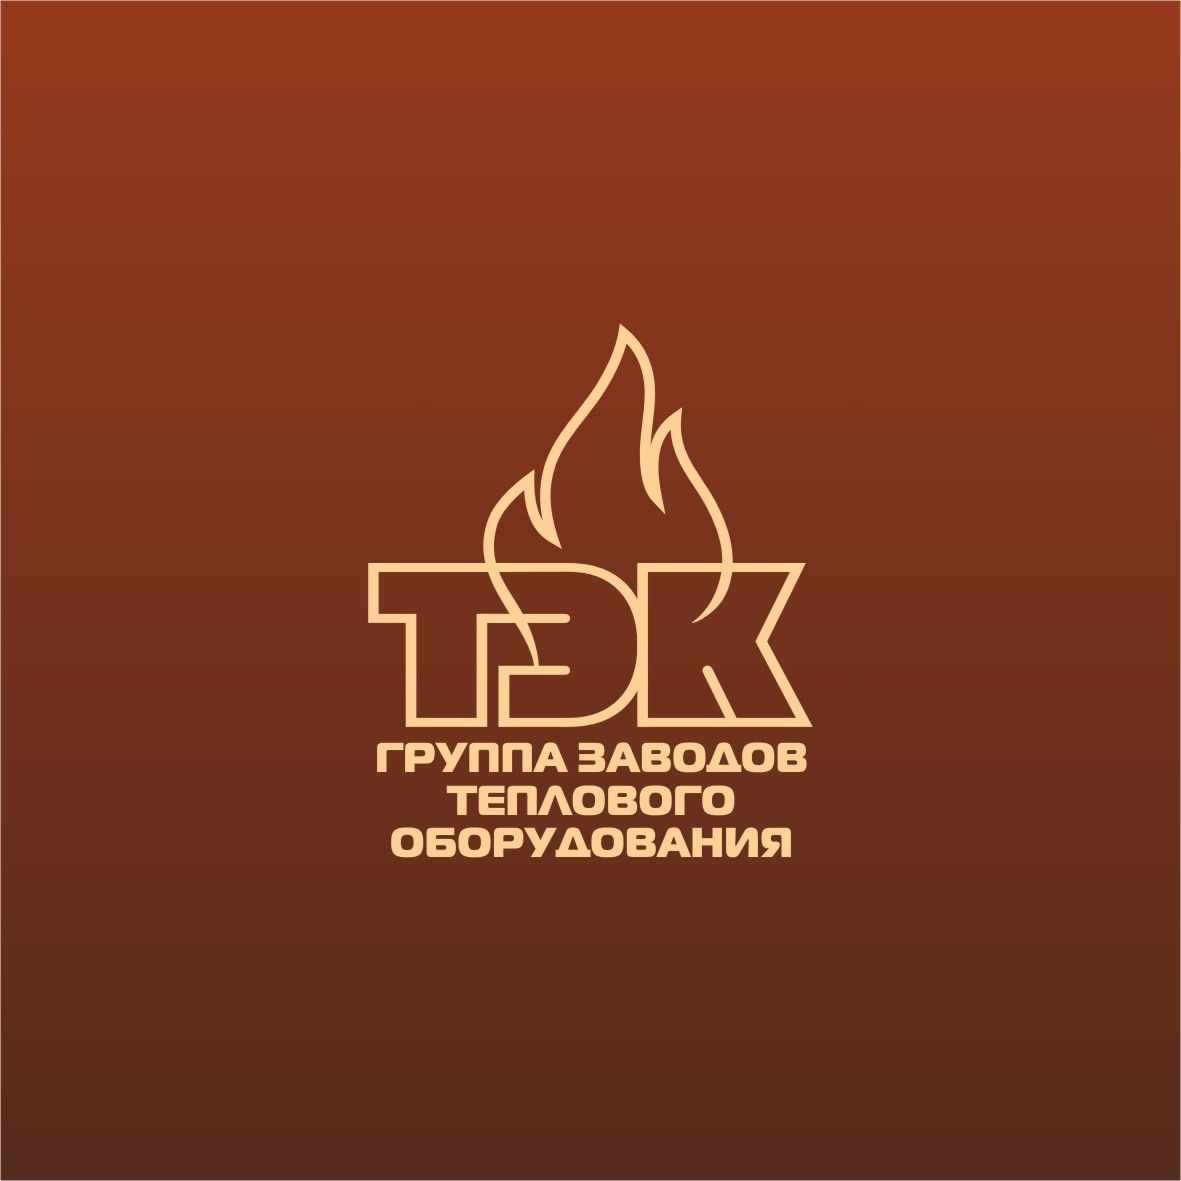 Лого и фирменный стиль для ТЭК - дизайнер Ryaha